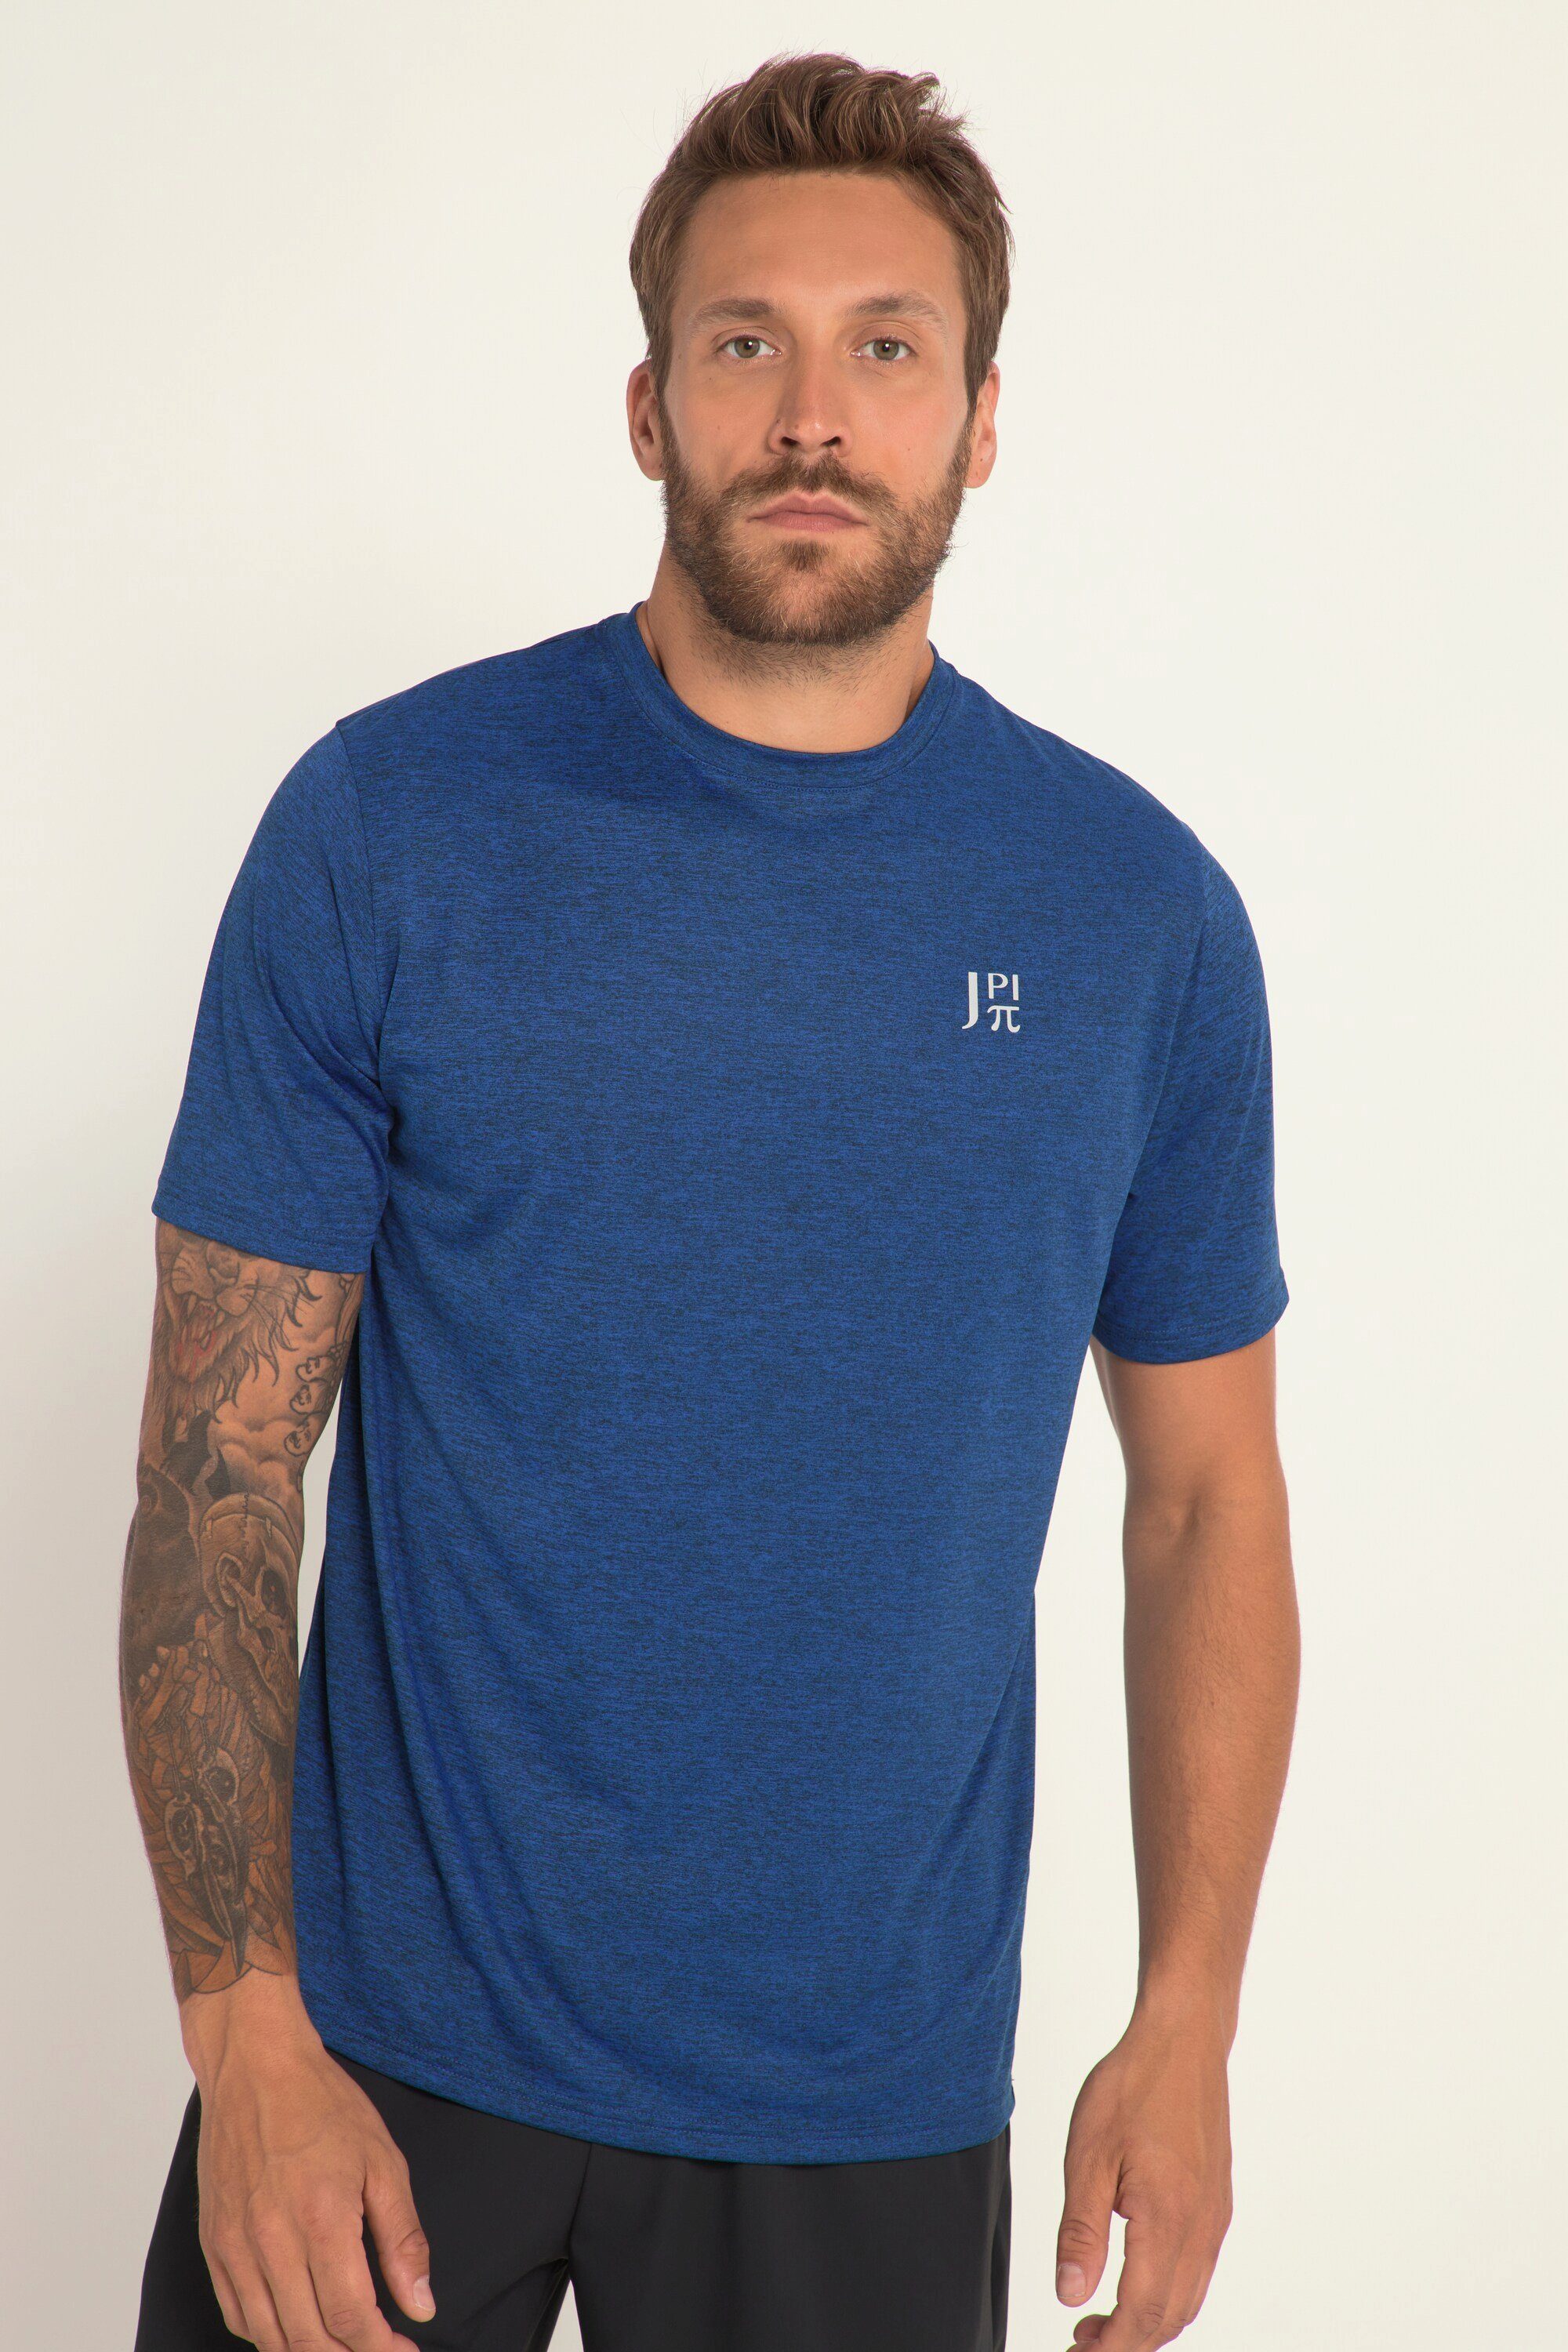 JP1880 T-Shirt Funktions-Shirt FLEXNAMIC® Halbarm QuickDry blau